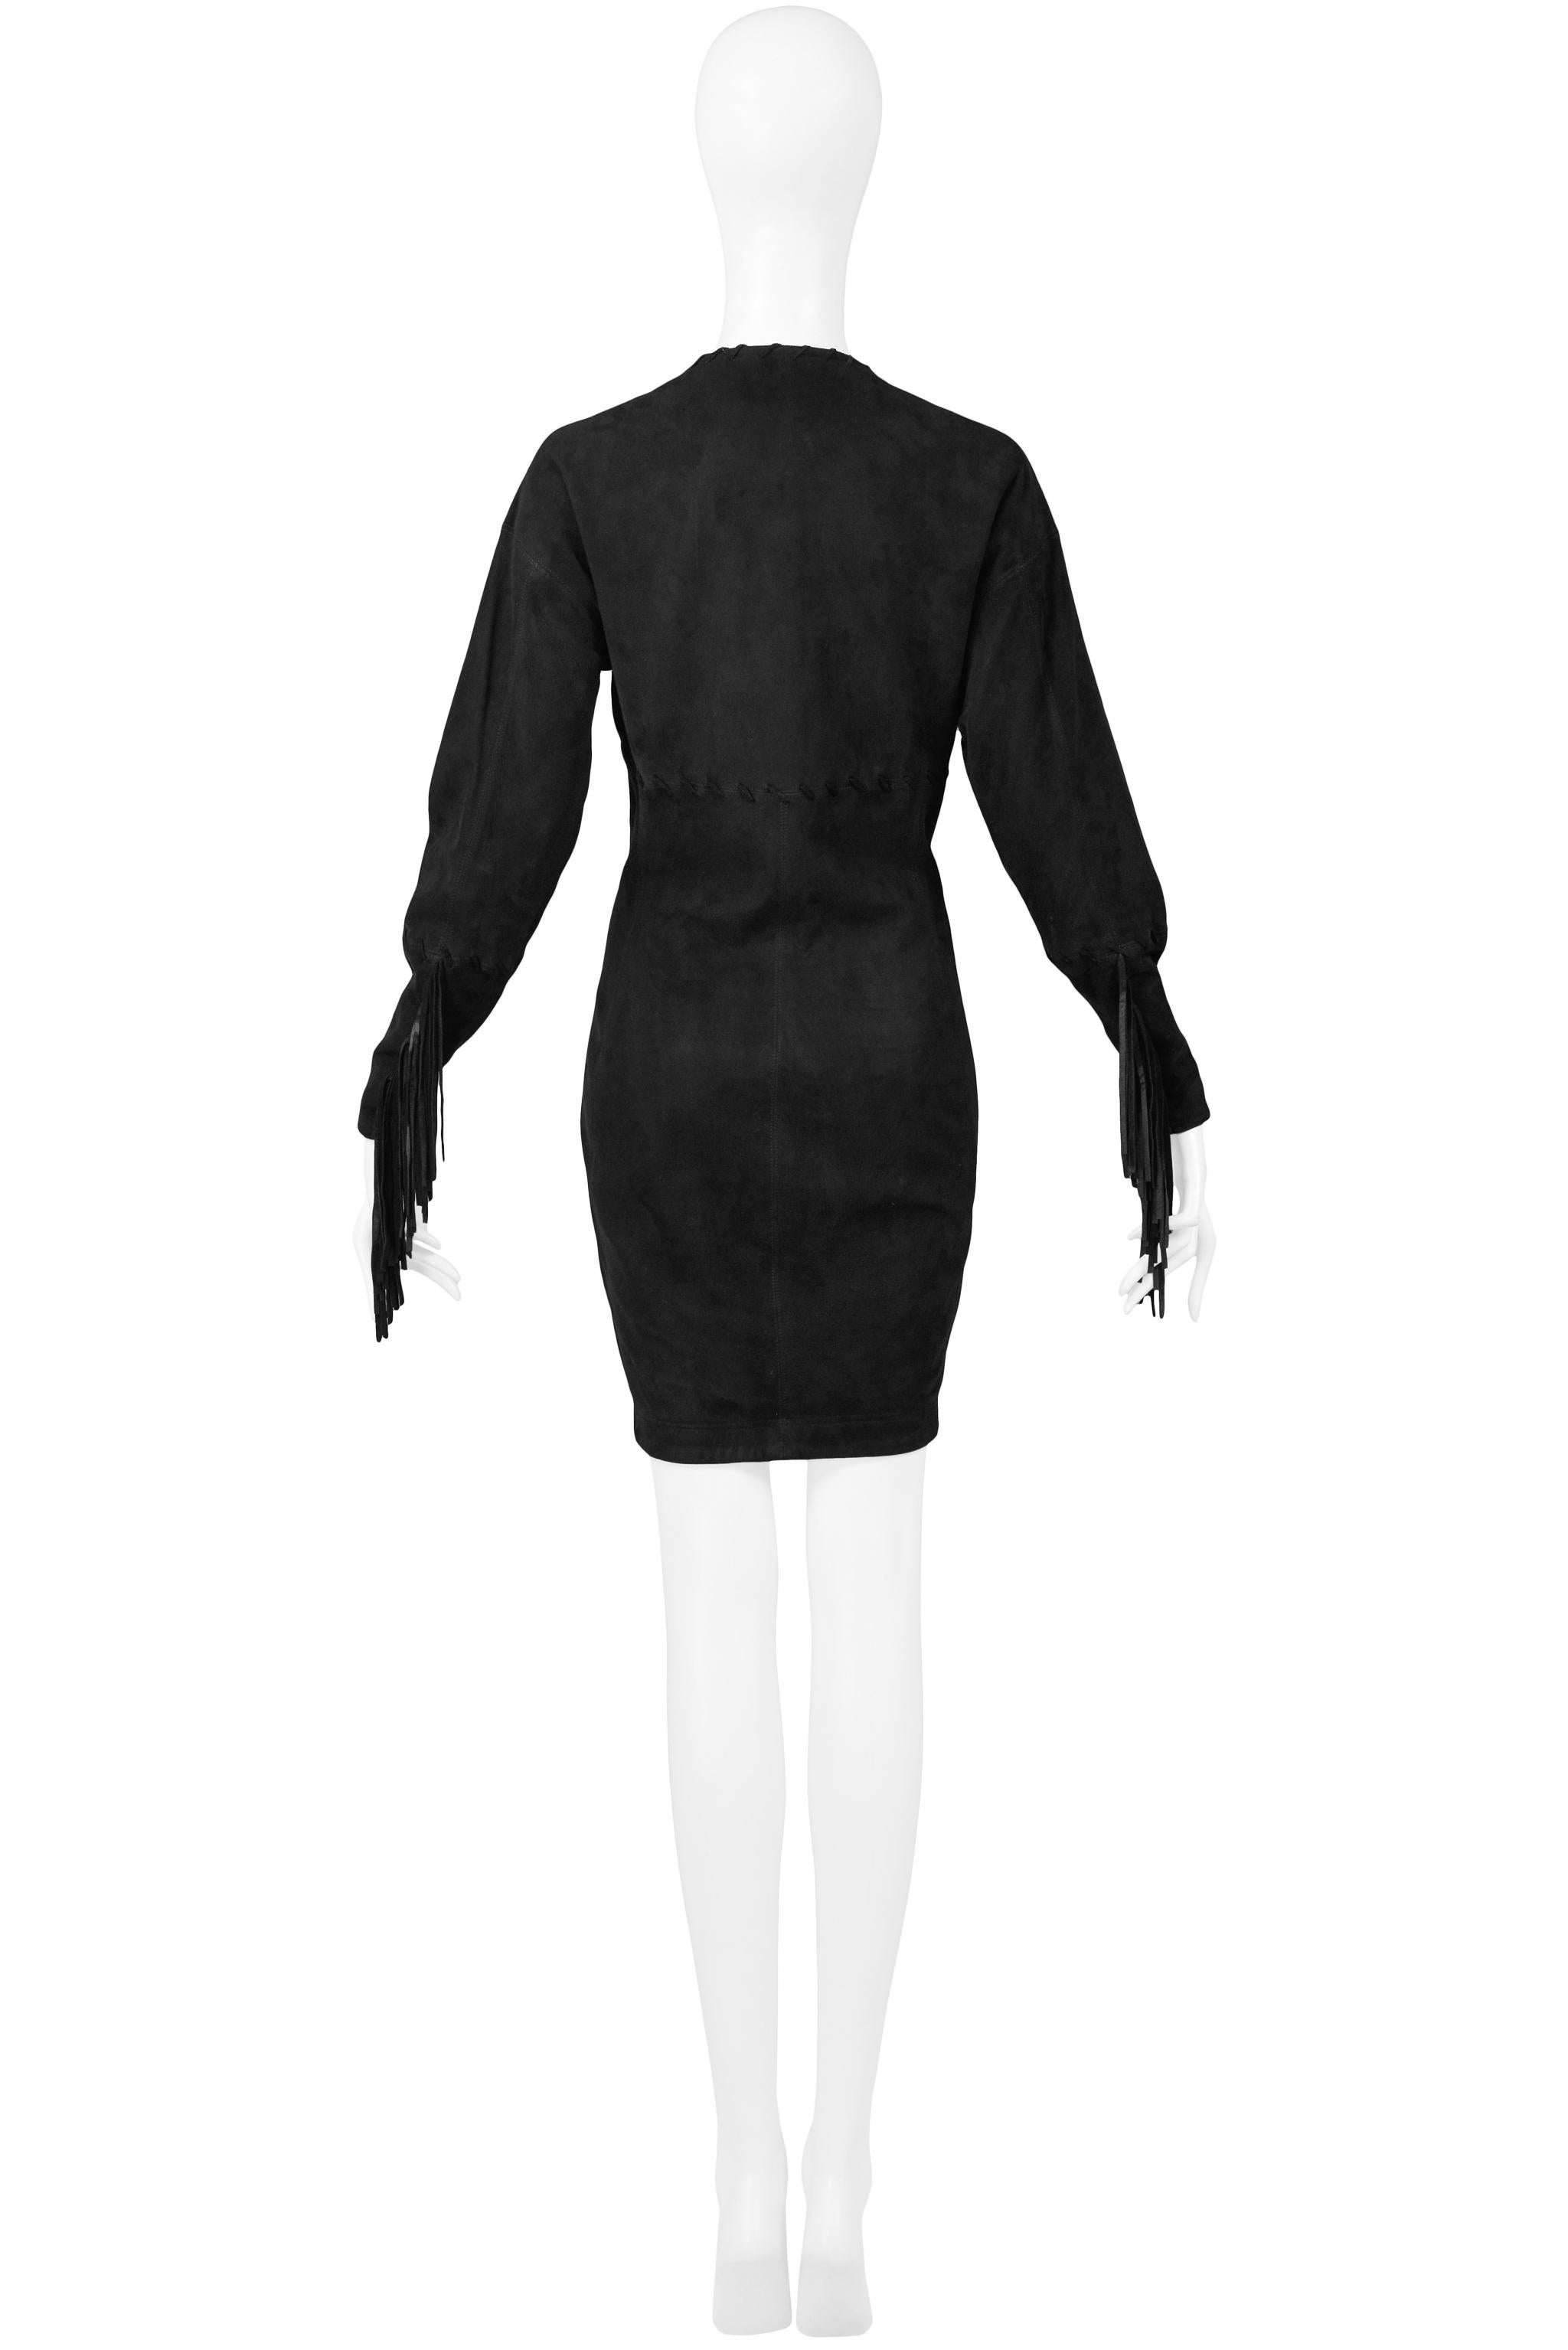 Noir Issac Mizrahi - Robe en daim et cuir noir 1989 en vente